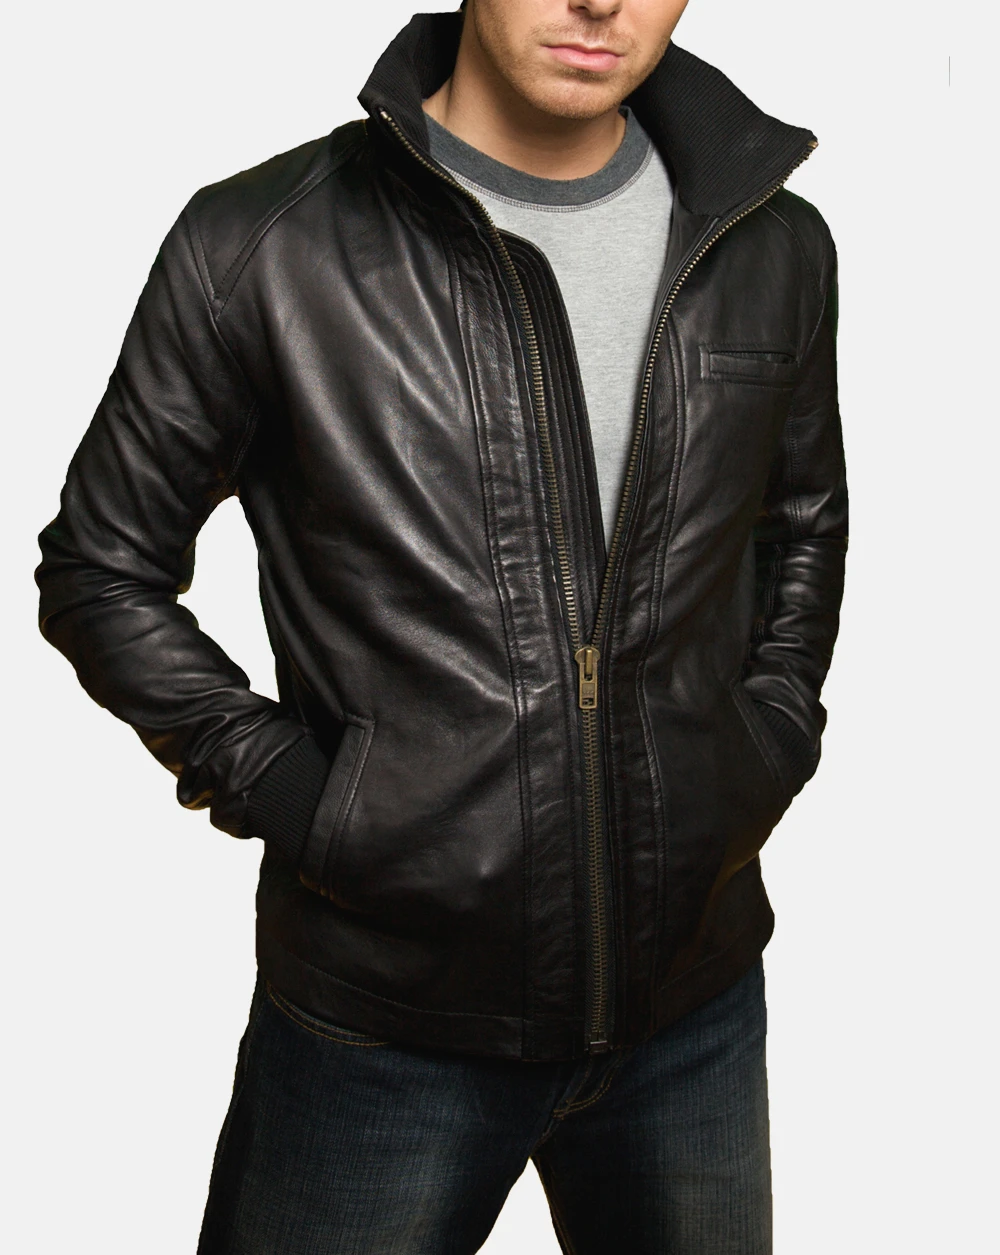 Belfort Belfort mens leather jacket